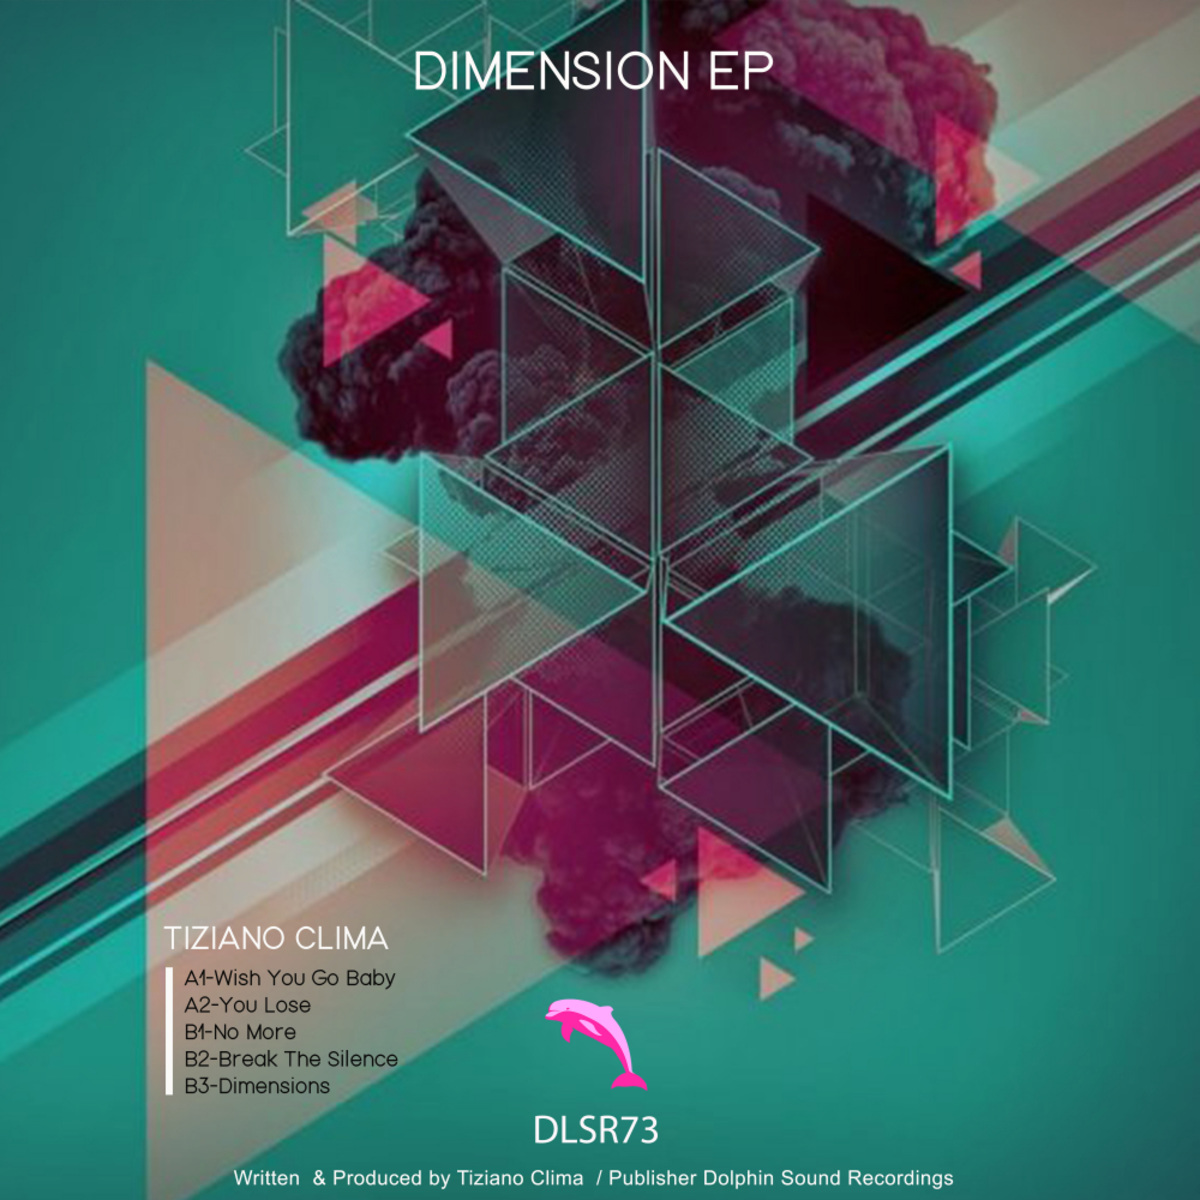 Tiziano Clima - Dimension EP / Dolphin Sound Recordings